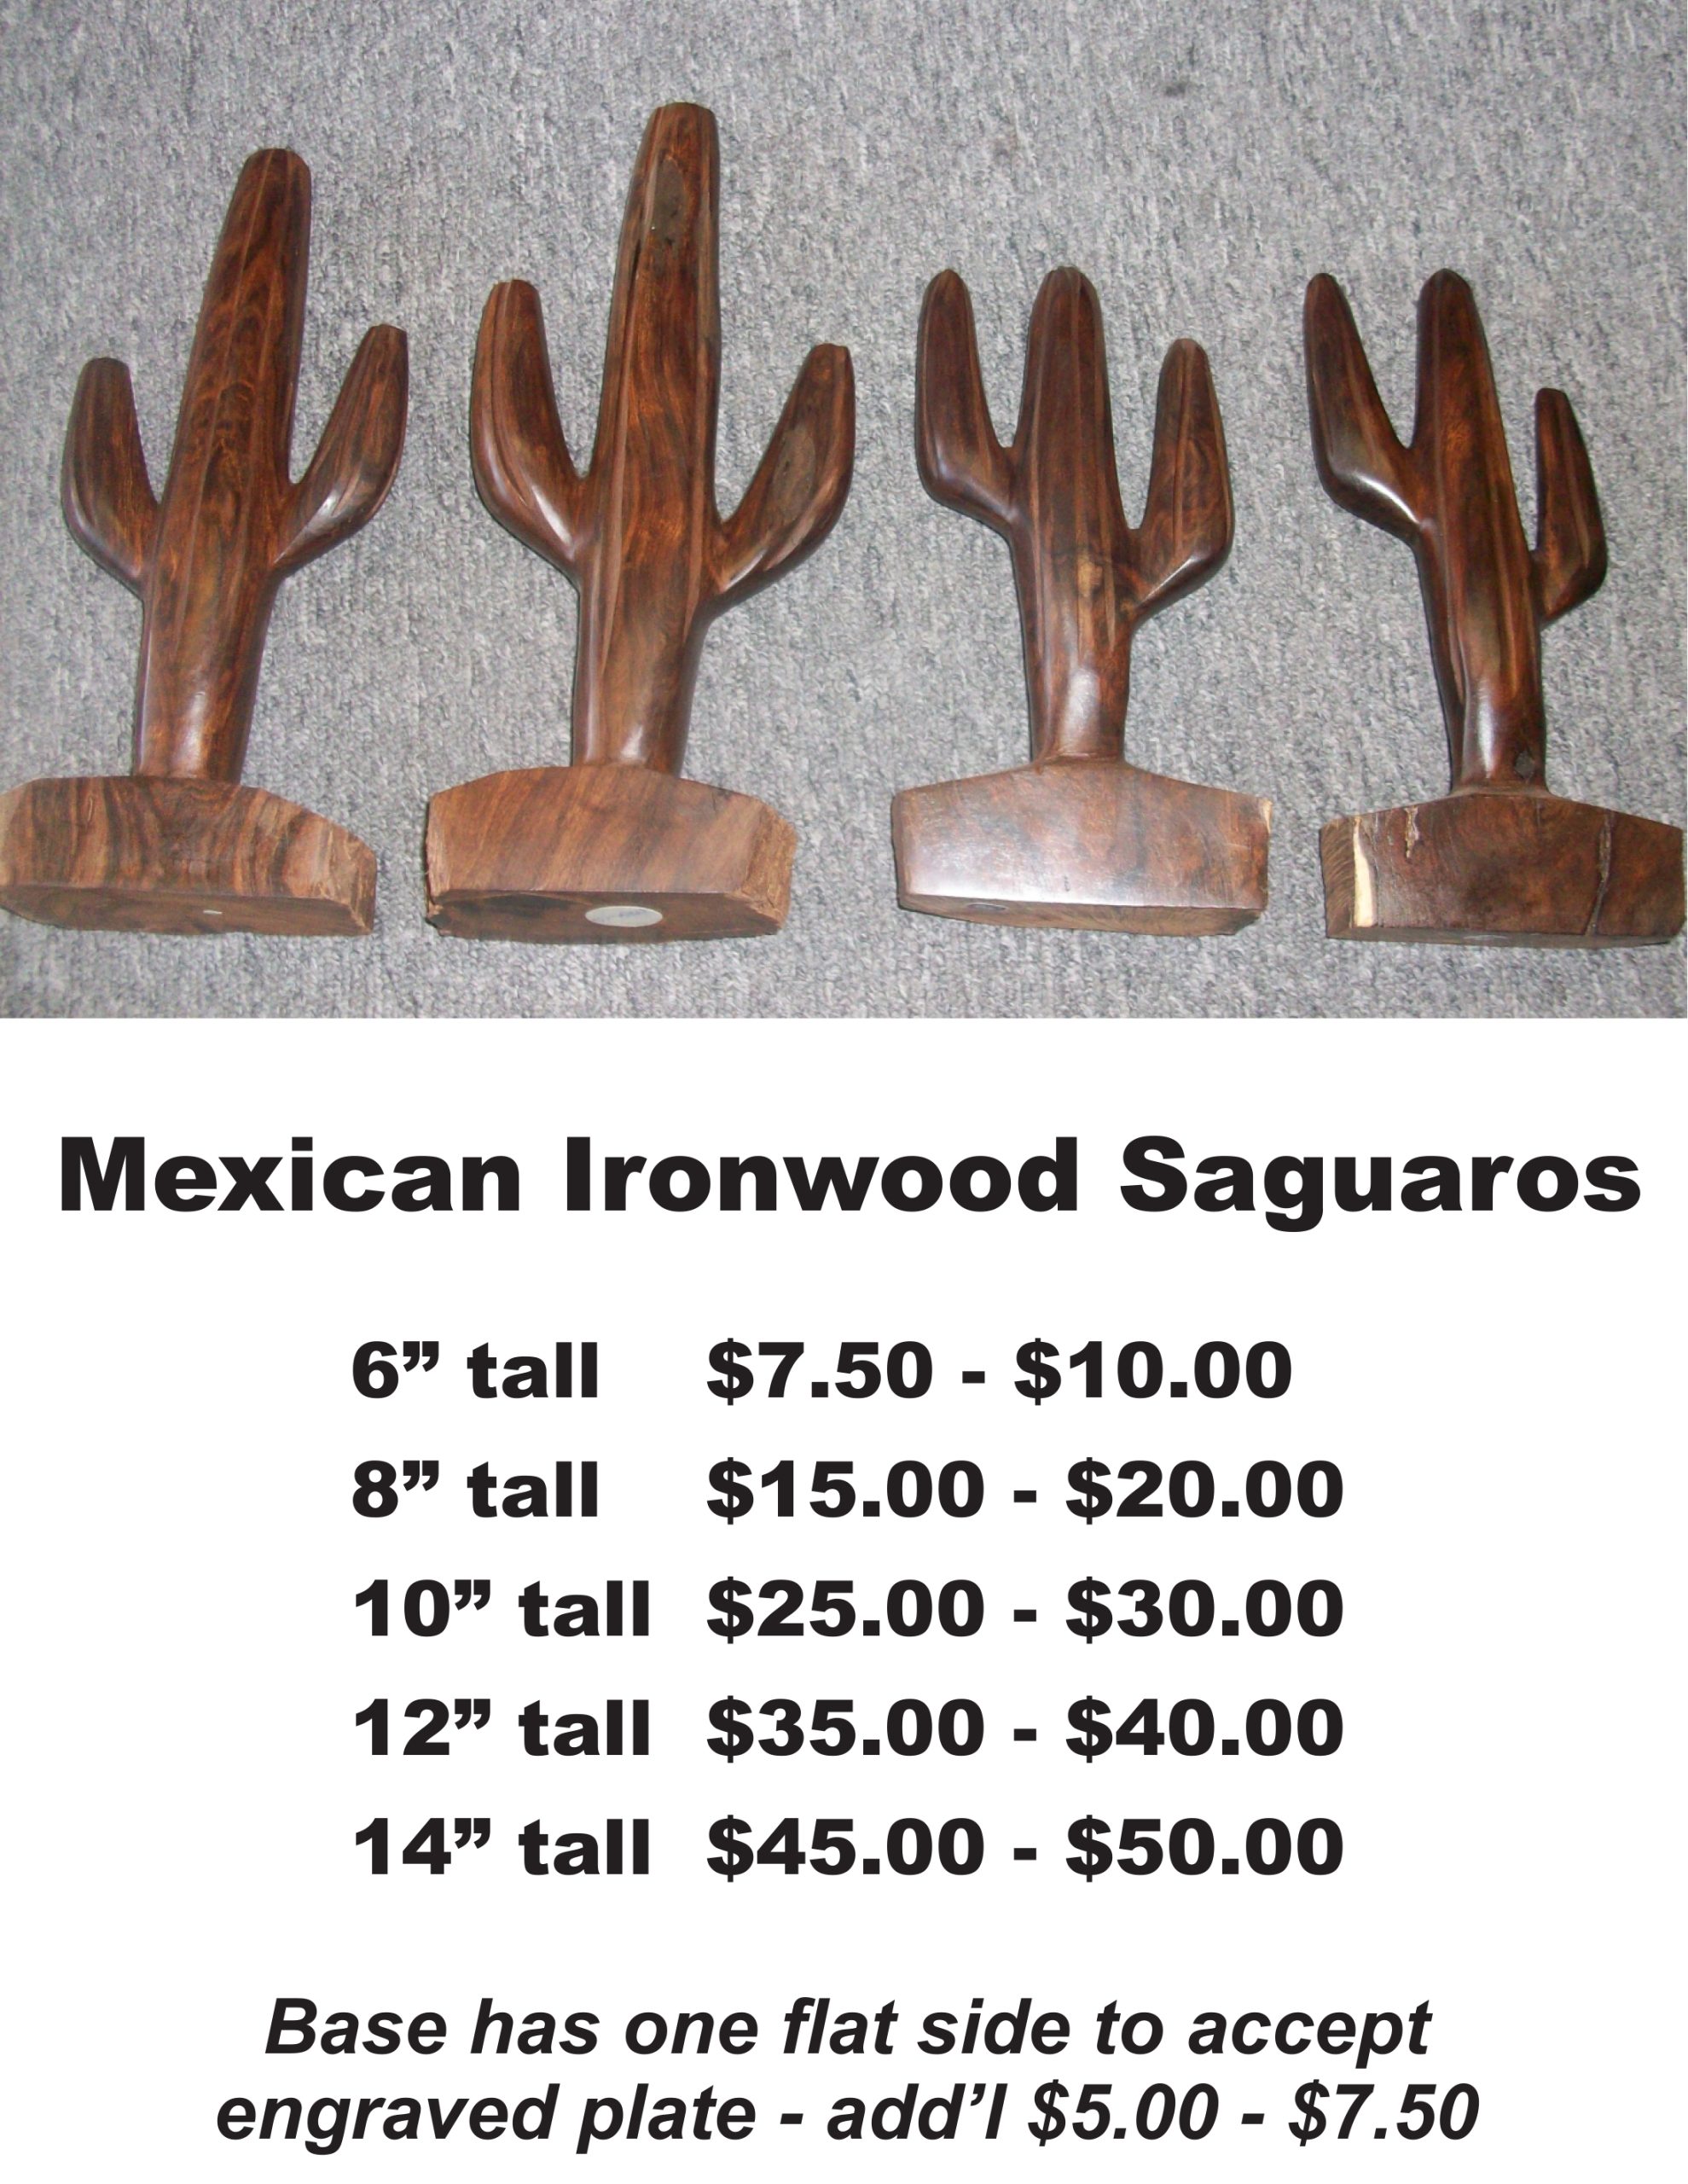 Ironwood Cactus Products